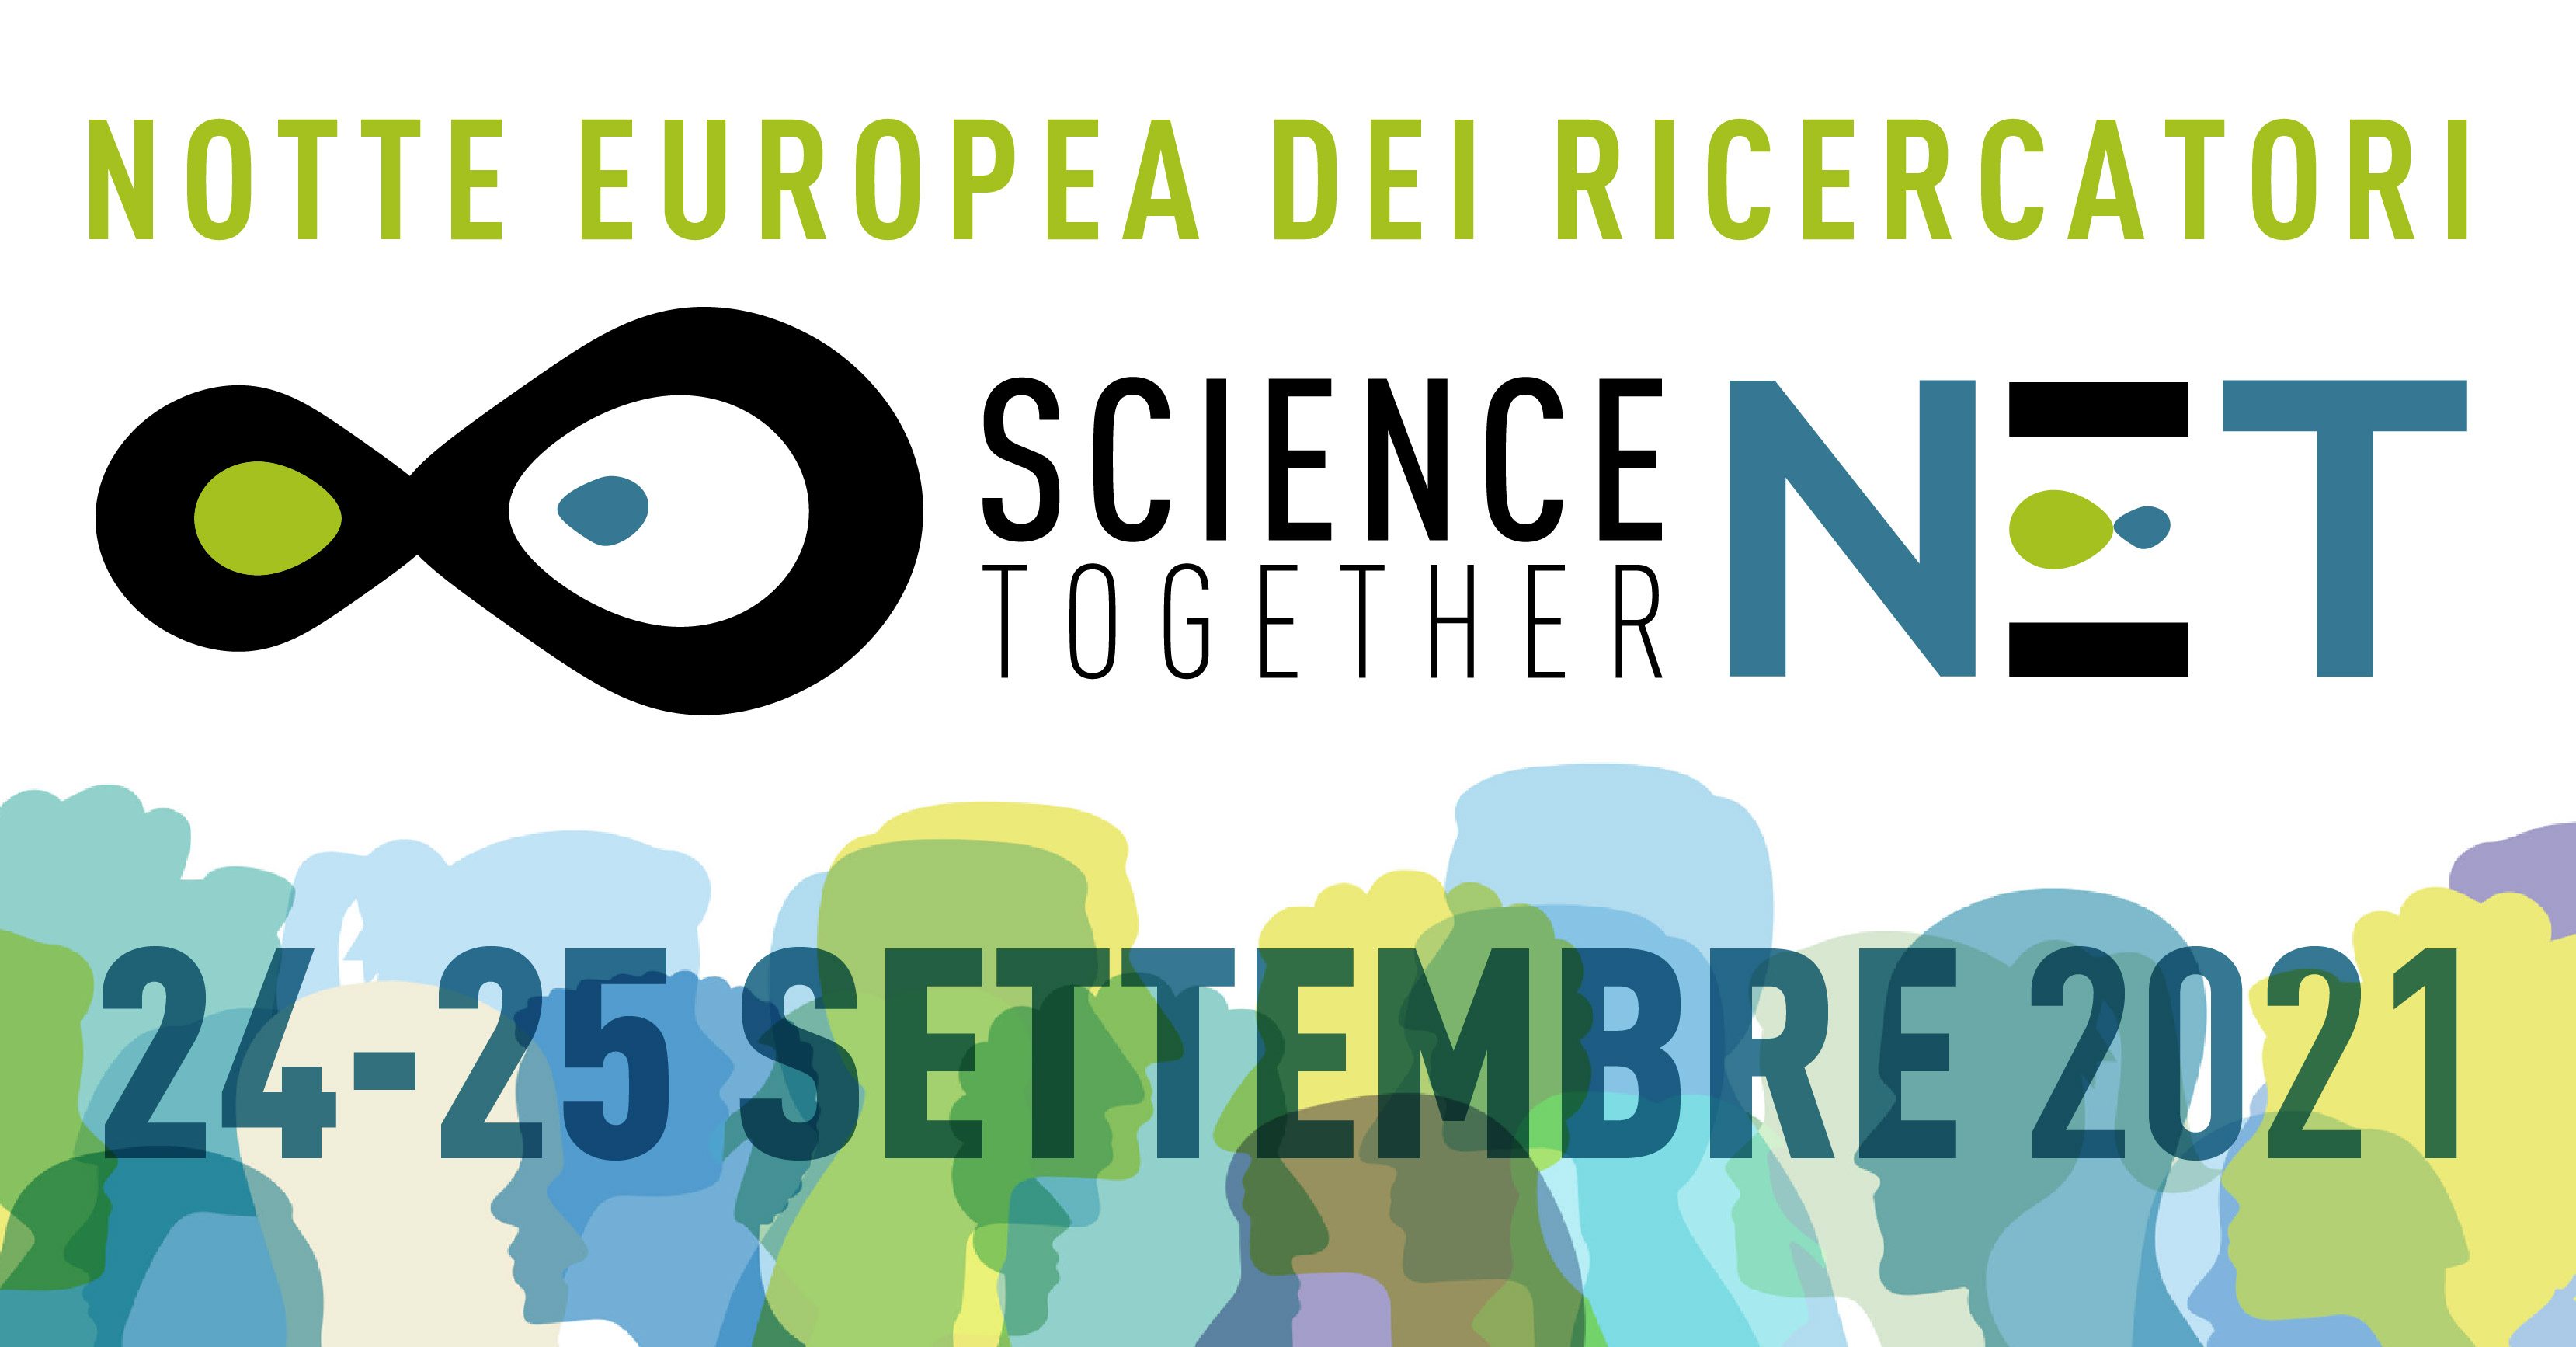 Roma per 2 giorni Capitale della Scienza con la Notte Europea dei Ricercatori e delle Ricercatrici di Scienza Insieme NET